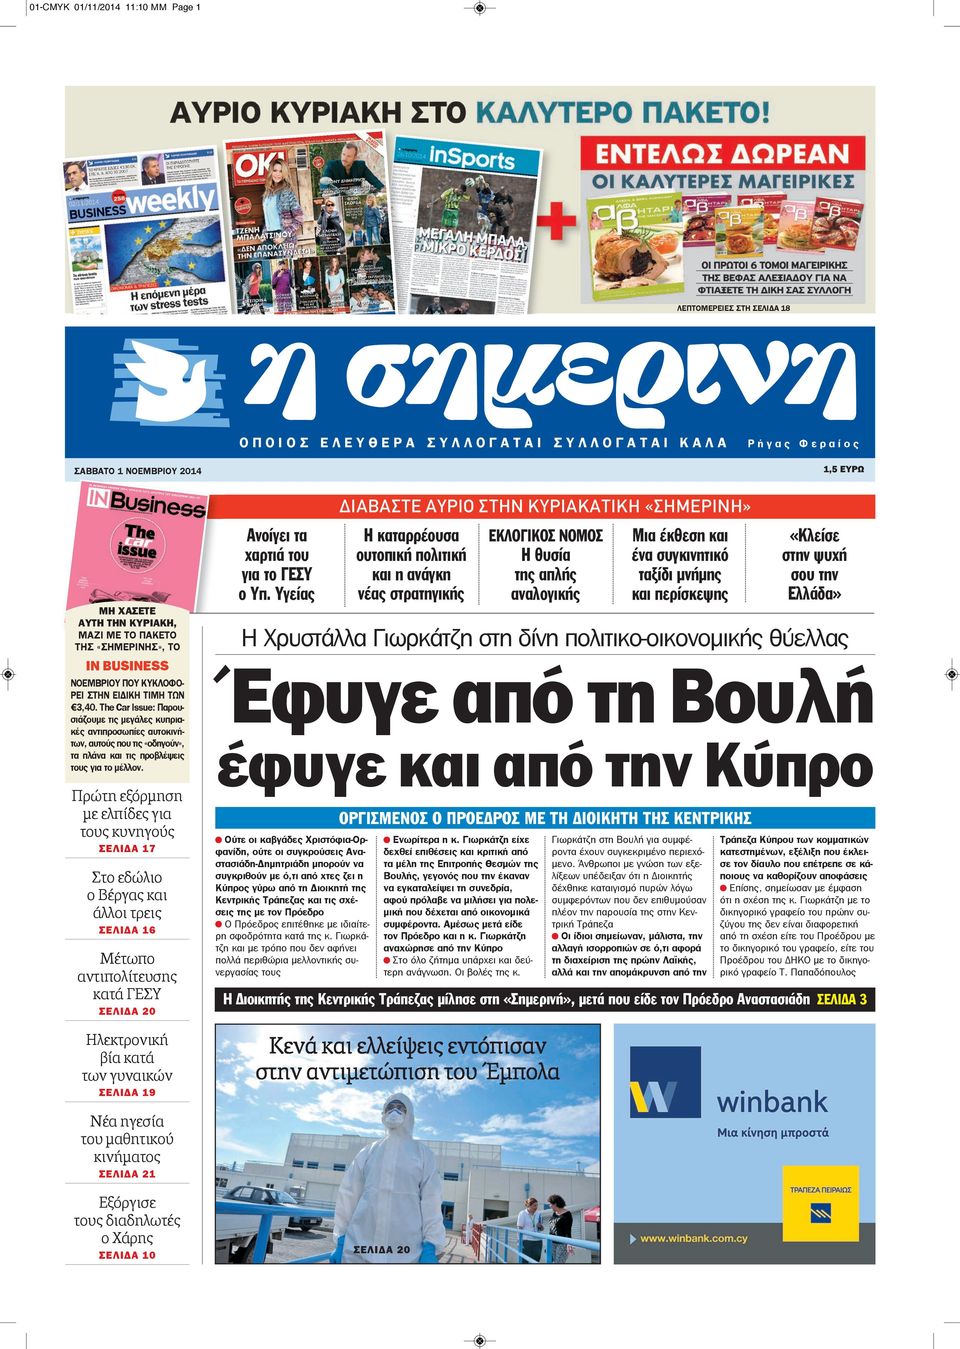 Τhe Car Issue: Παρουσιάζουμε τις μεγάλες κυπριακές αντιπροσωπίες αυτοκινήτων, αυτούς που τις «οδηγούν», τα πλάνα και τις προβλέψεις τους για το μέλλον.